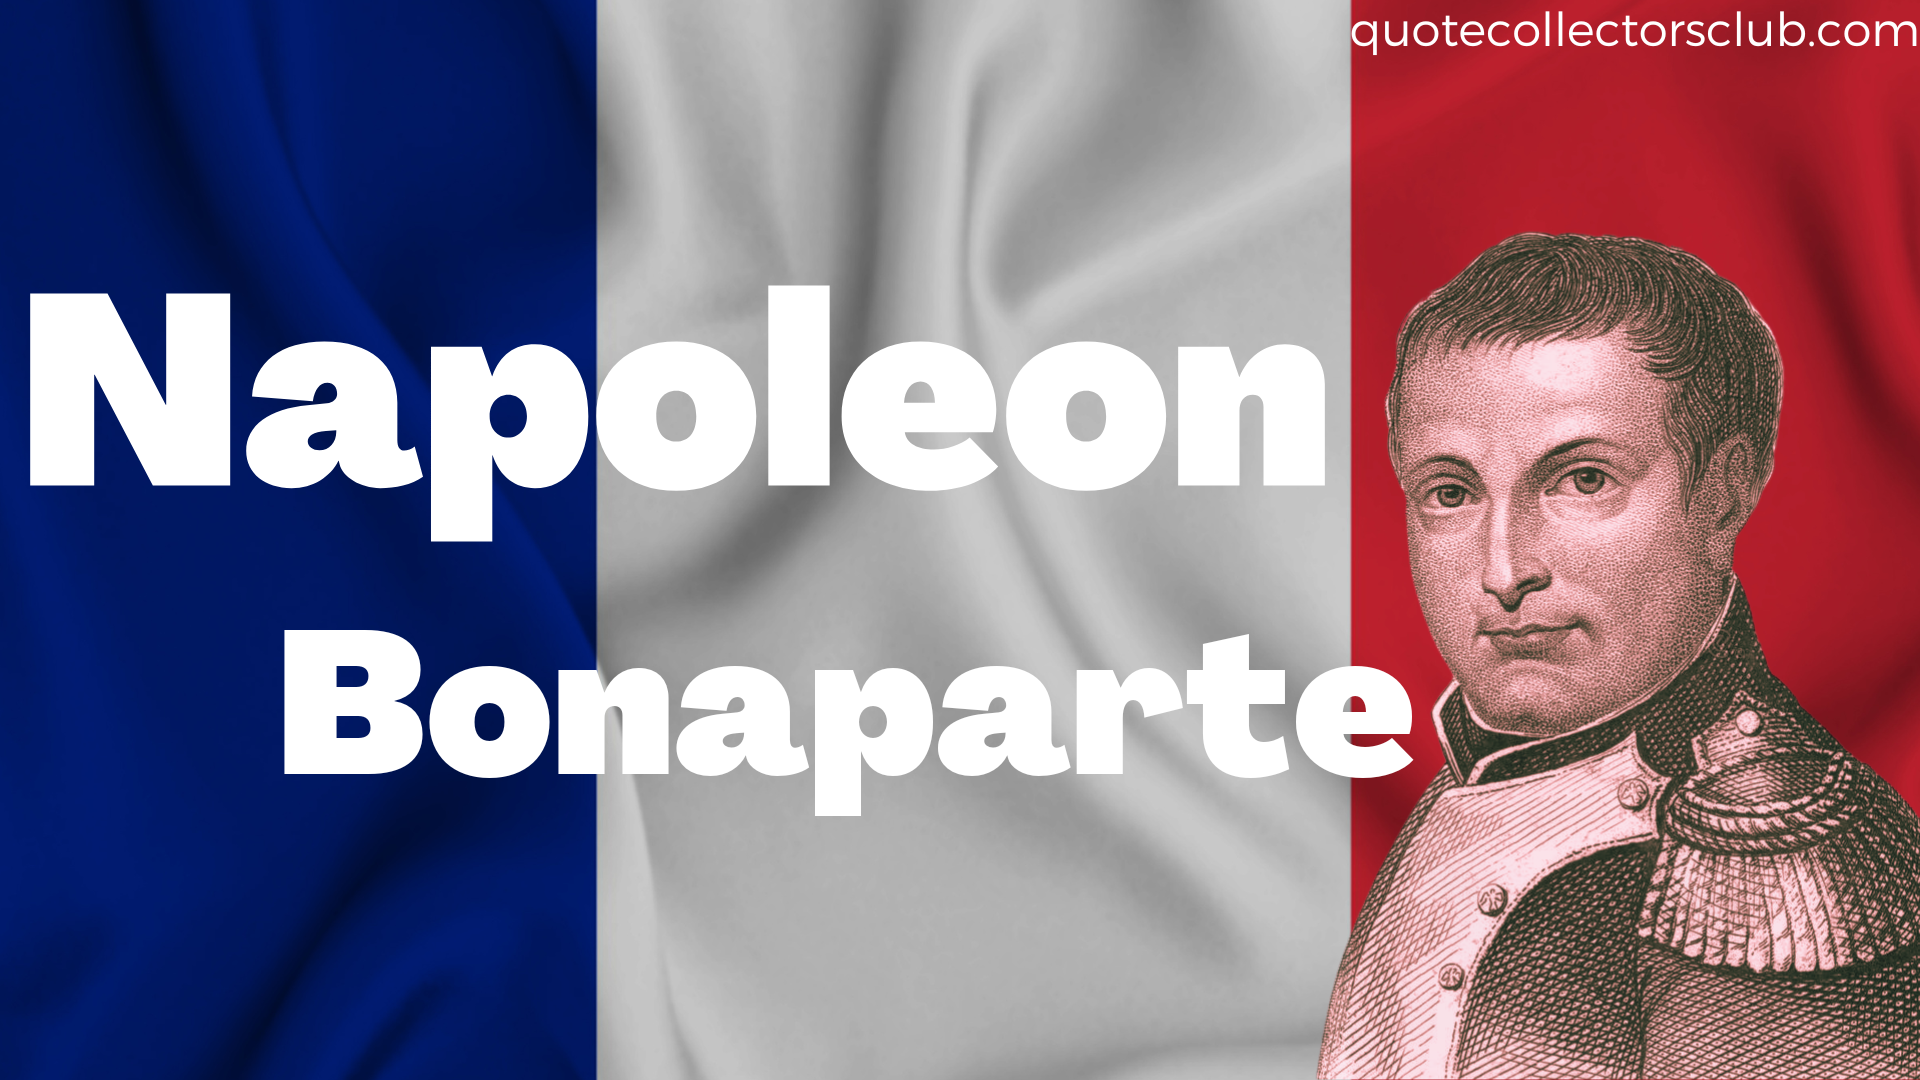 napoleon quotes